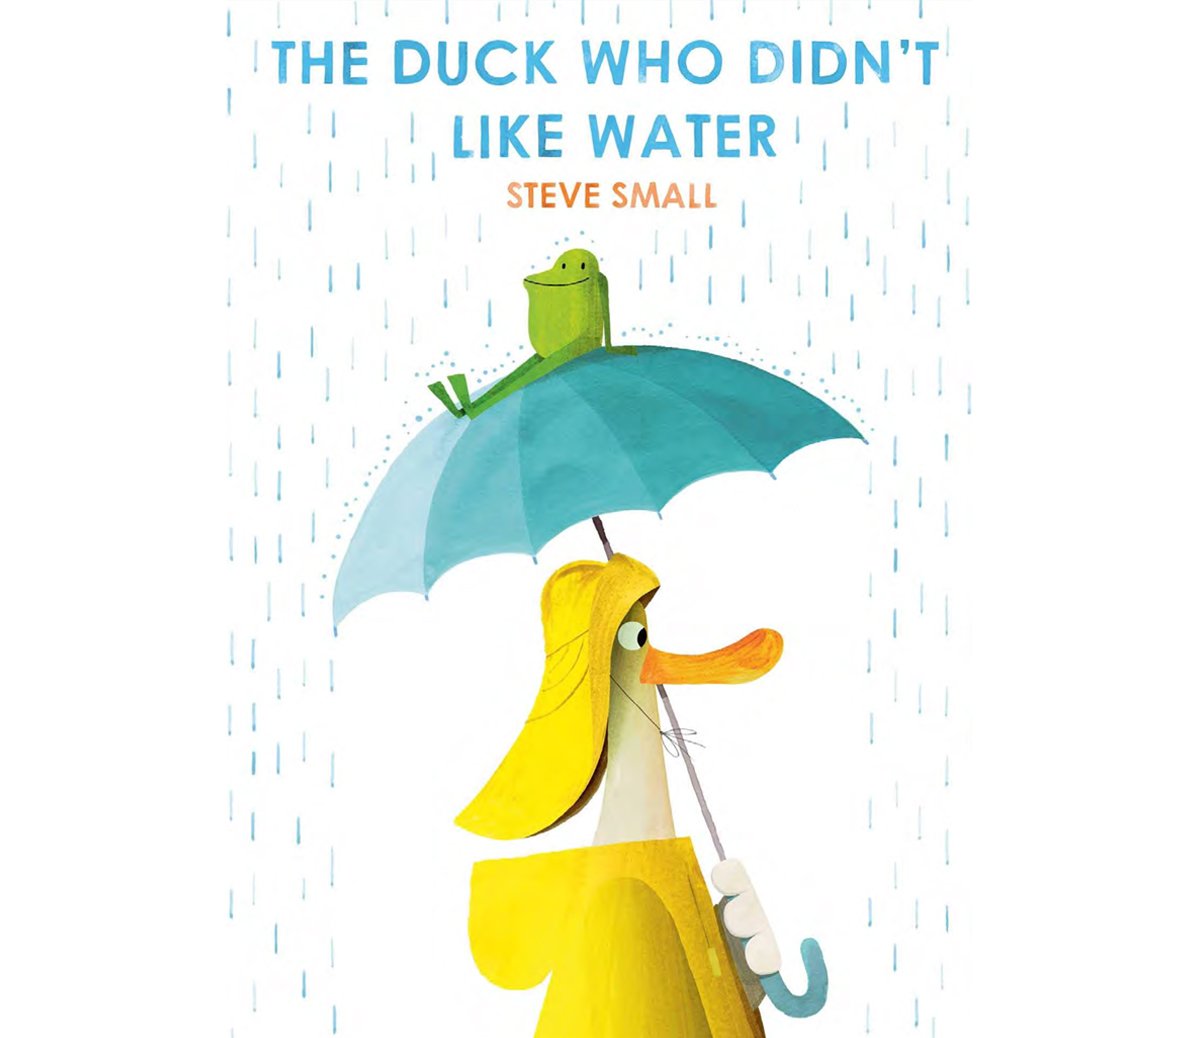 Steve-Small-Duck-cover.jpg